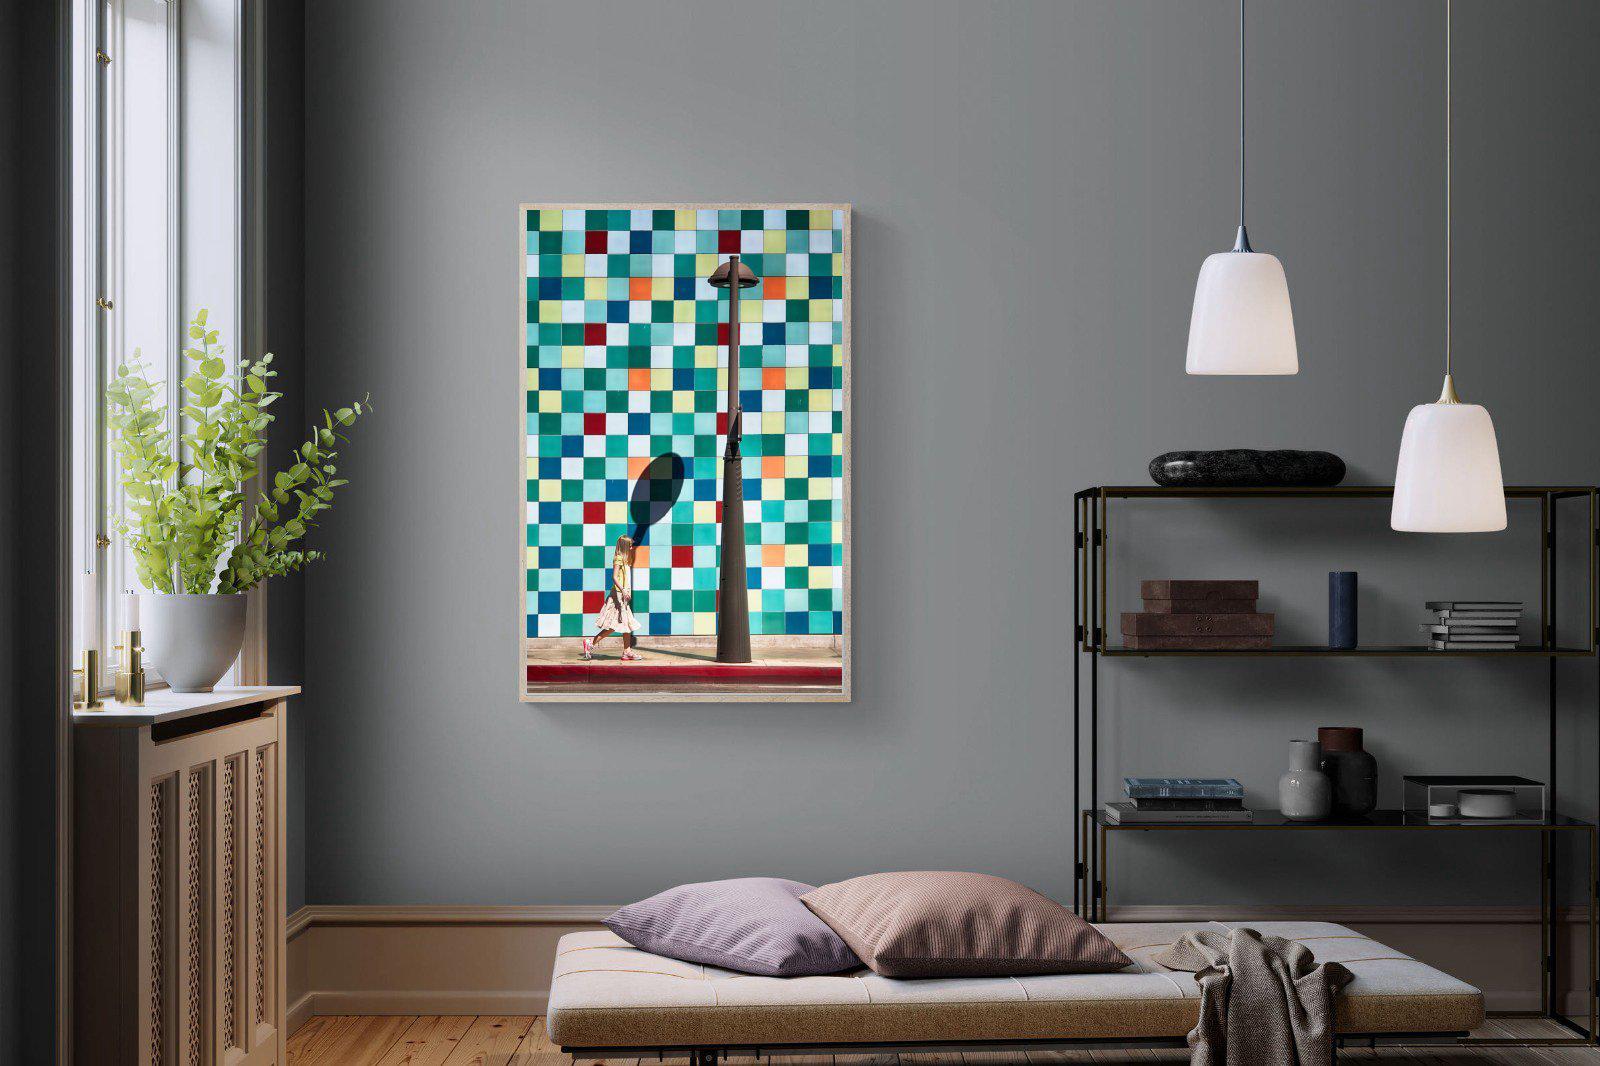 Tiles-Wall_Art-100 x 150cm-Mounted Canvas-Wood-Pixalot